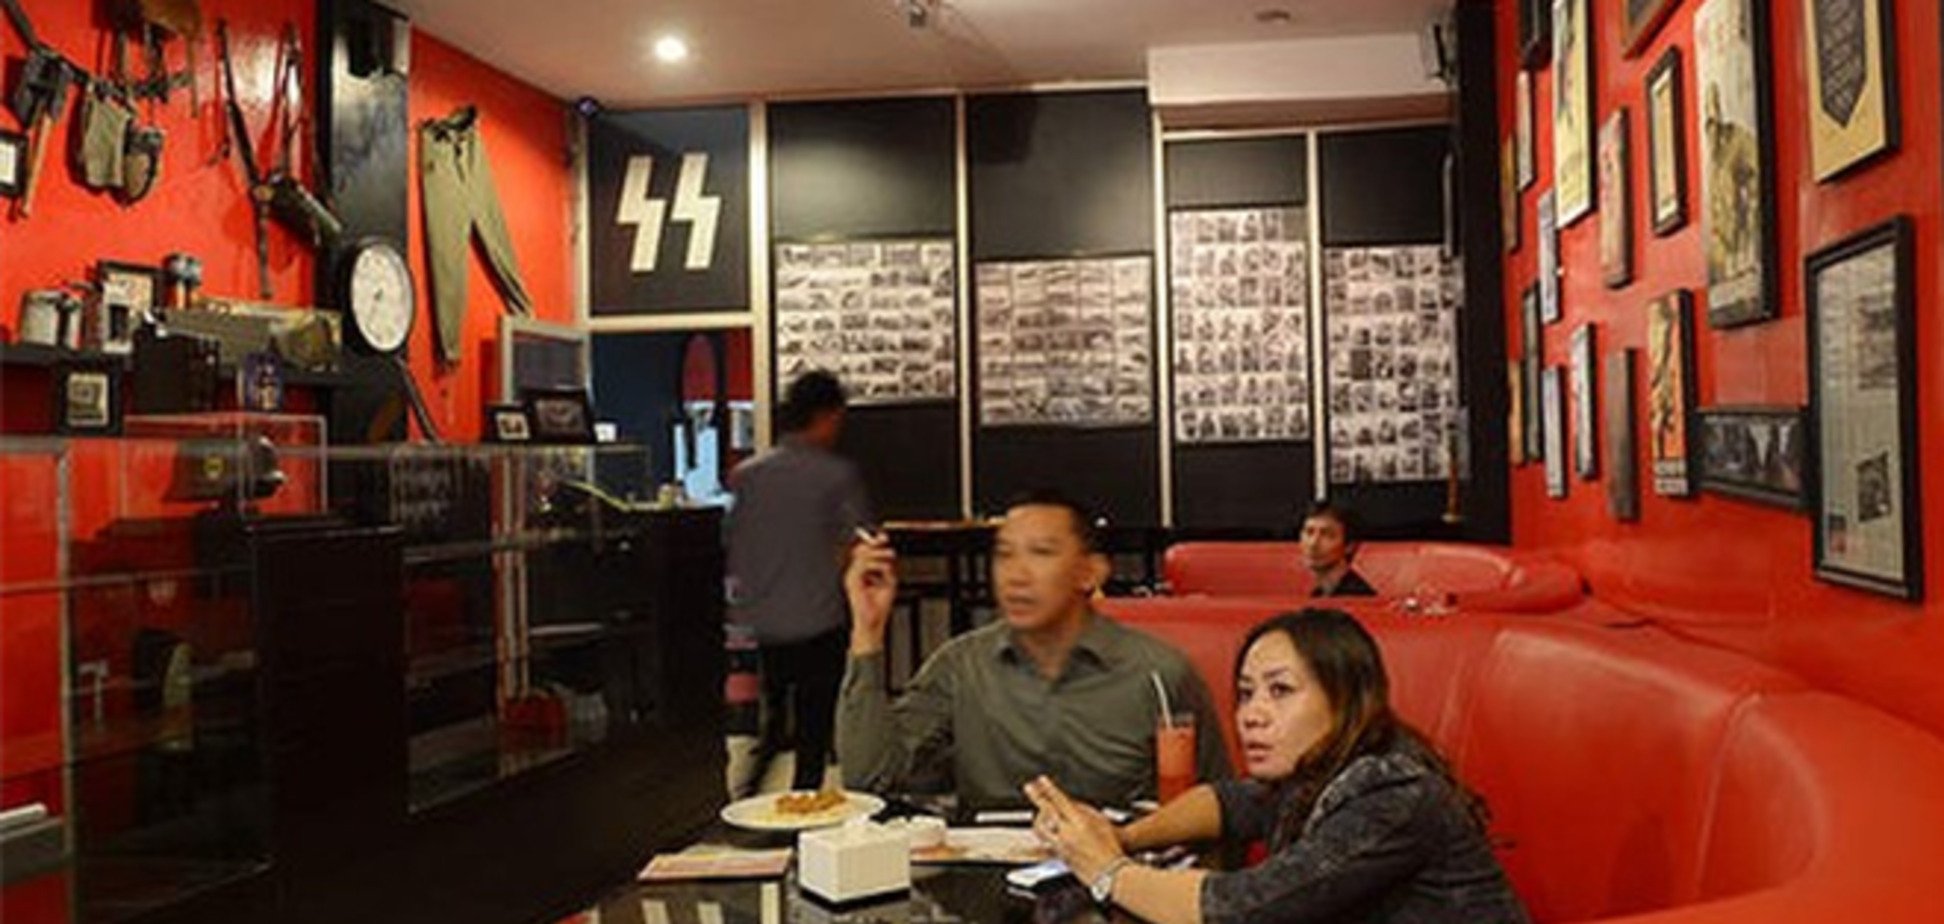 СМИ вынудили закрыть «нацистское» кафе в Индонезии